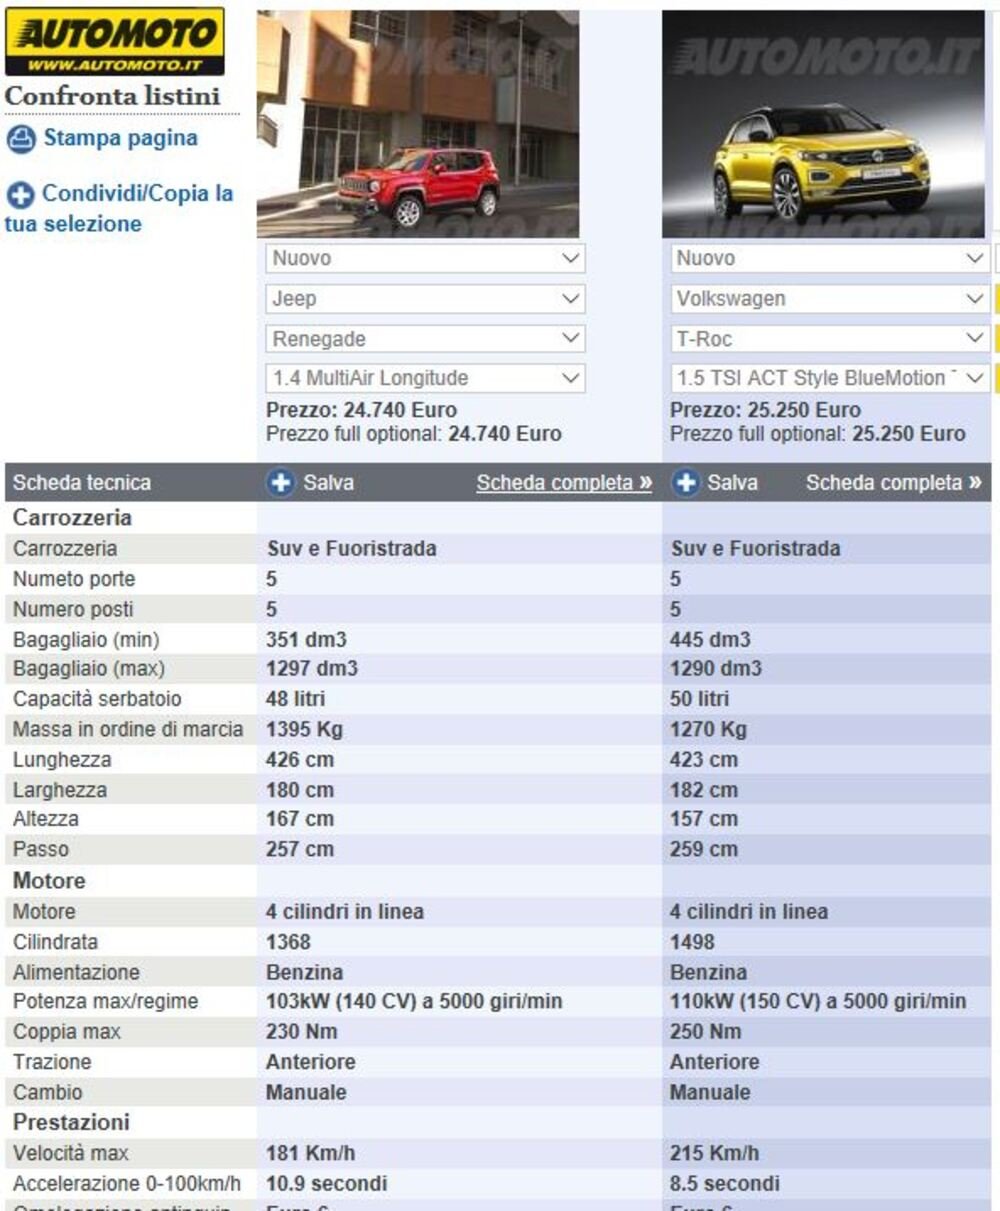 Le due schede modello delle Crossover Jeep e Volkswagen messe a confronto su Automoto.it